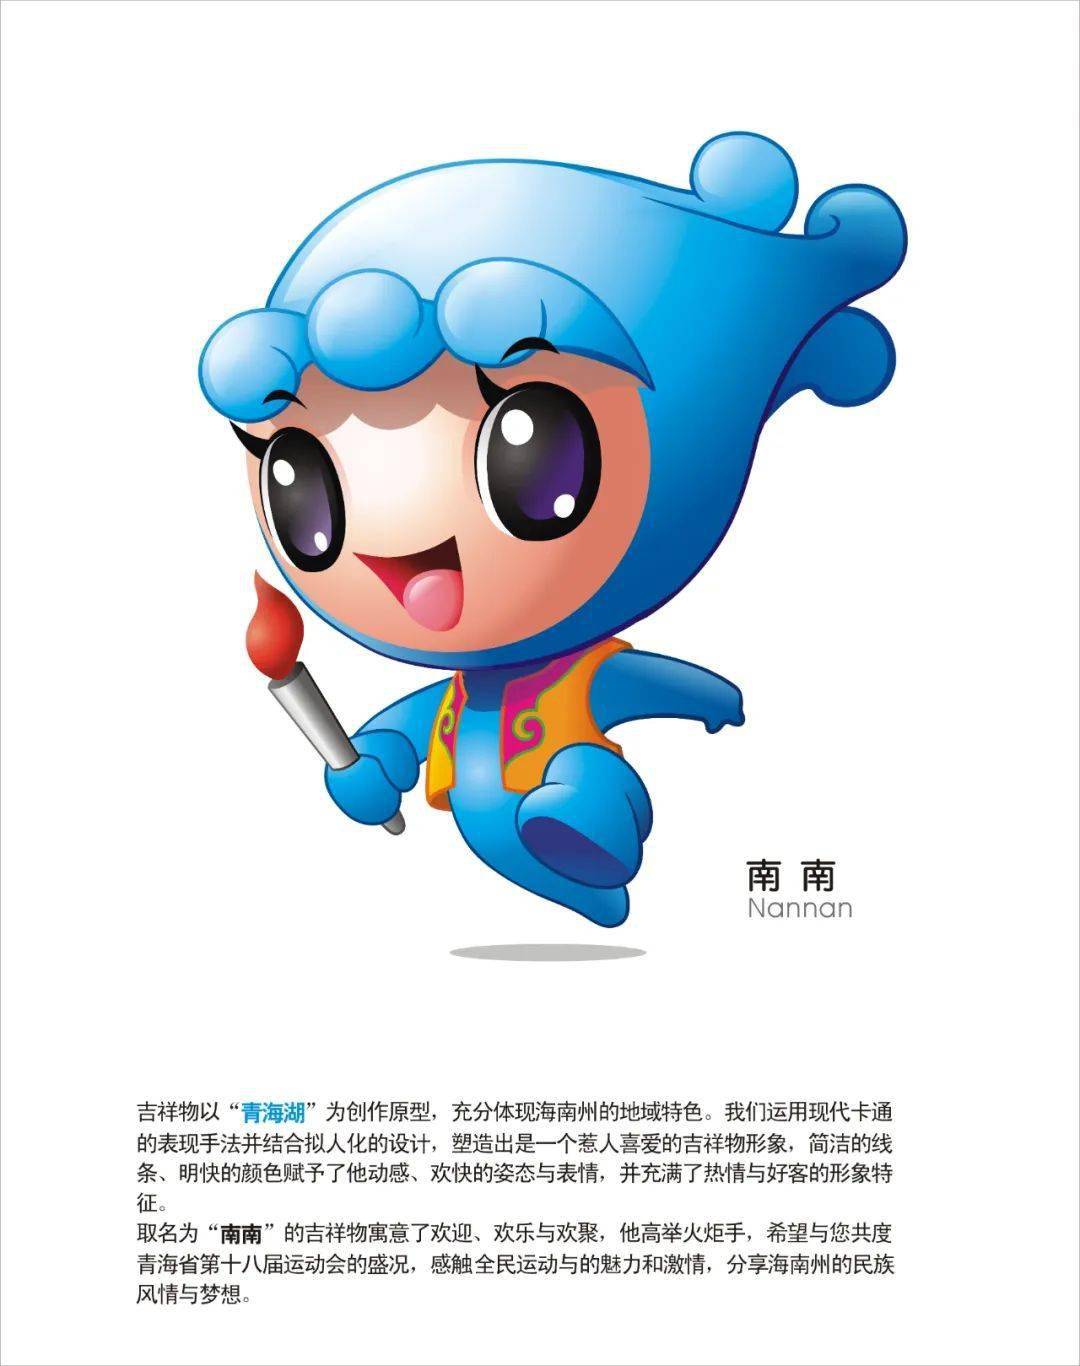 省运会专栏丨第十八届省运会吉祥物设计图展示一